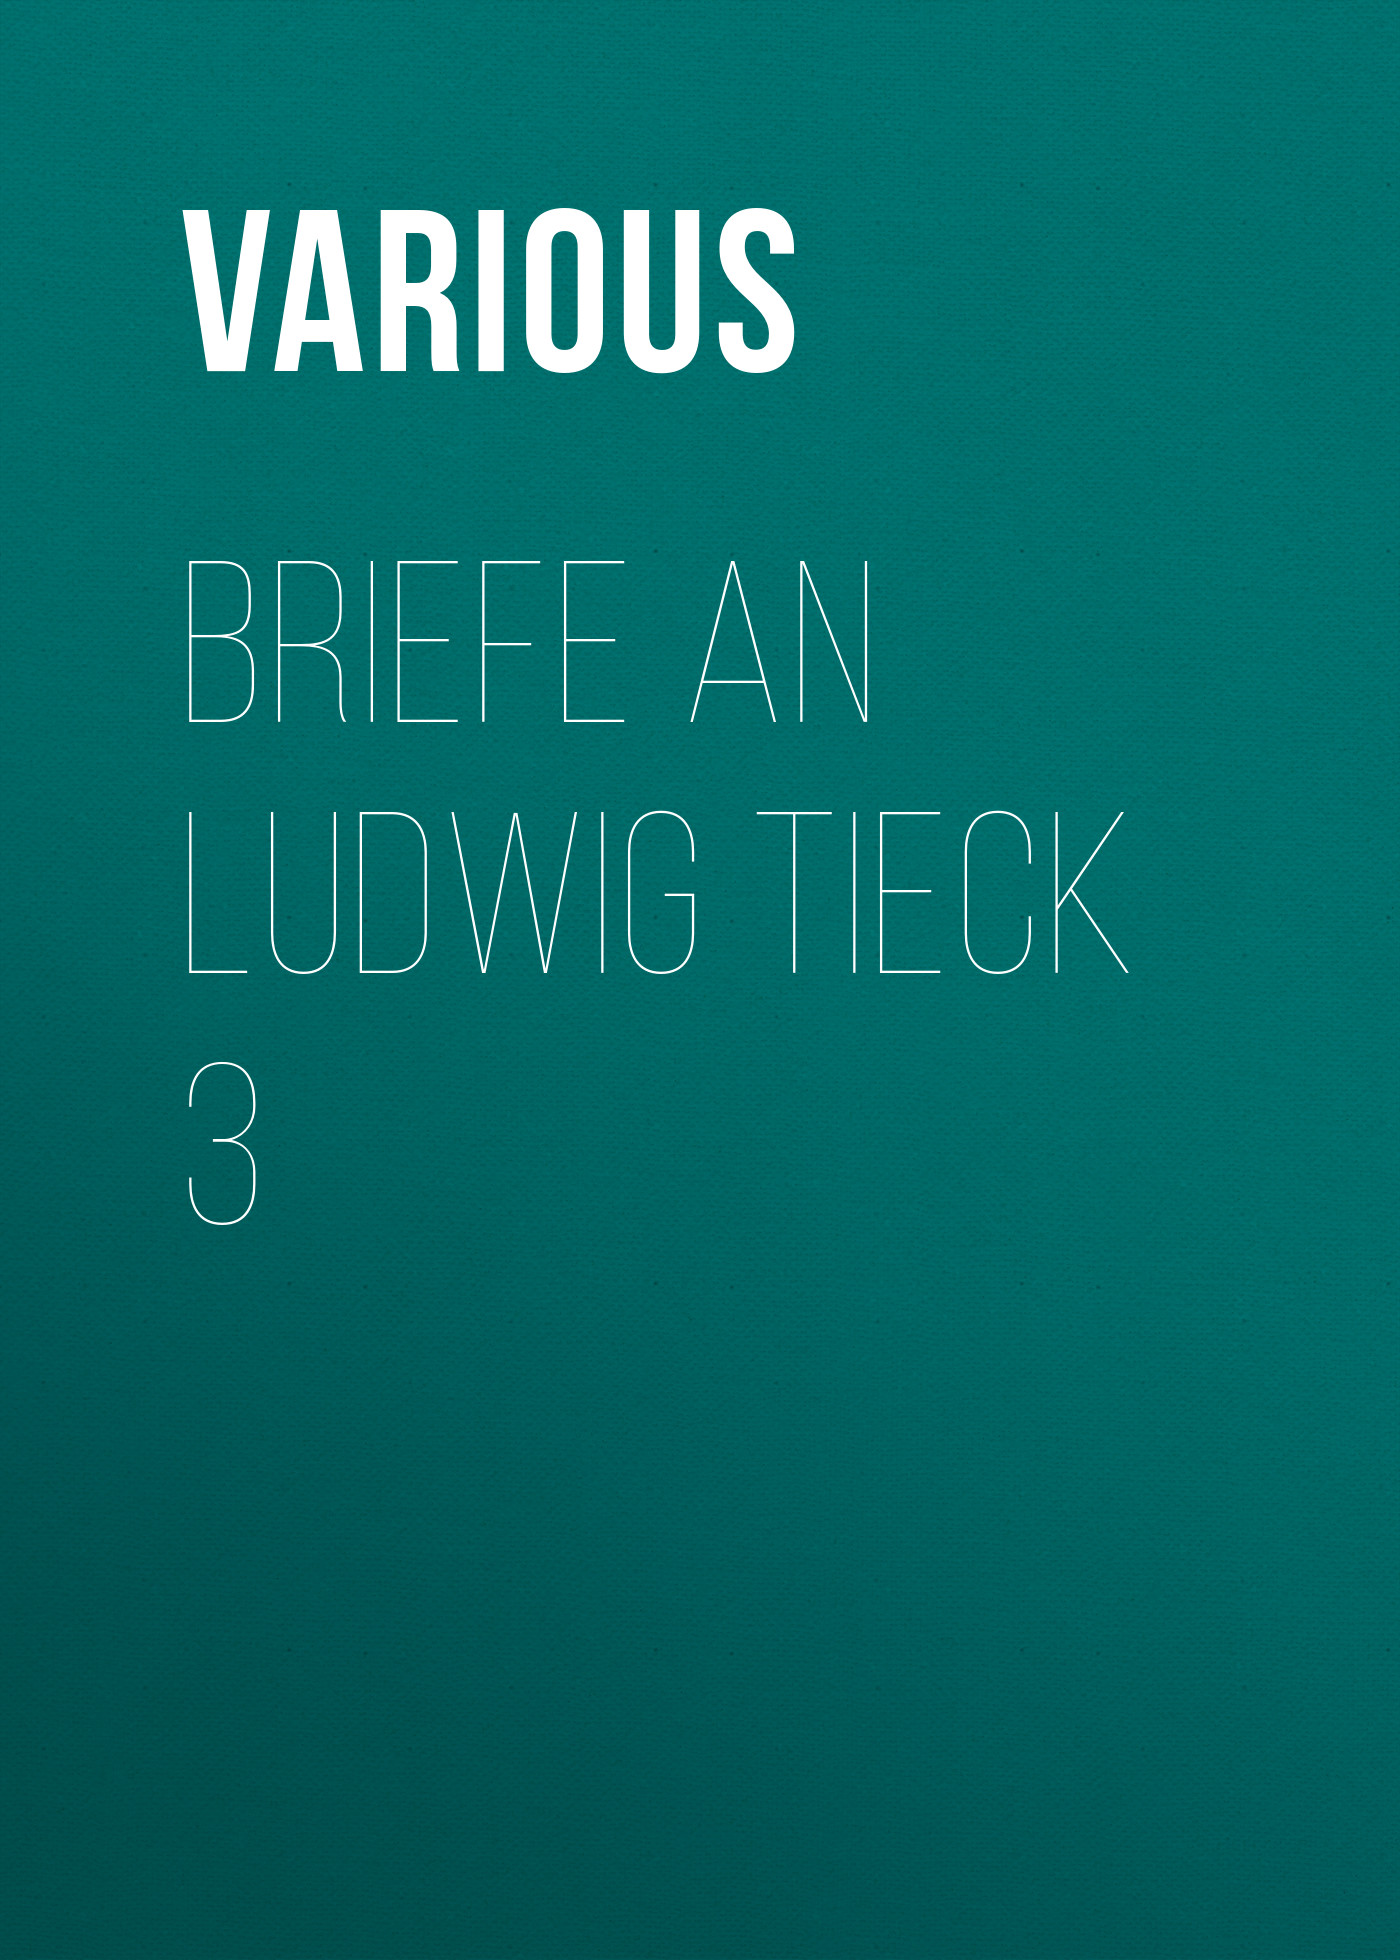 Книга Briefe an Ludwig Tieck 3 из серии , созданная  Various, может относится к жанру Зарубежная классика. Стоимость электронной книги Briefe an Ludwig Tieck 3 с идентификатором 25571135 составляет 0 руб.